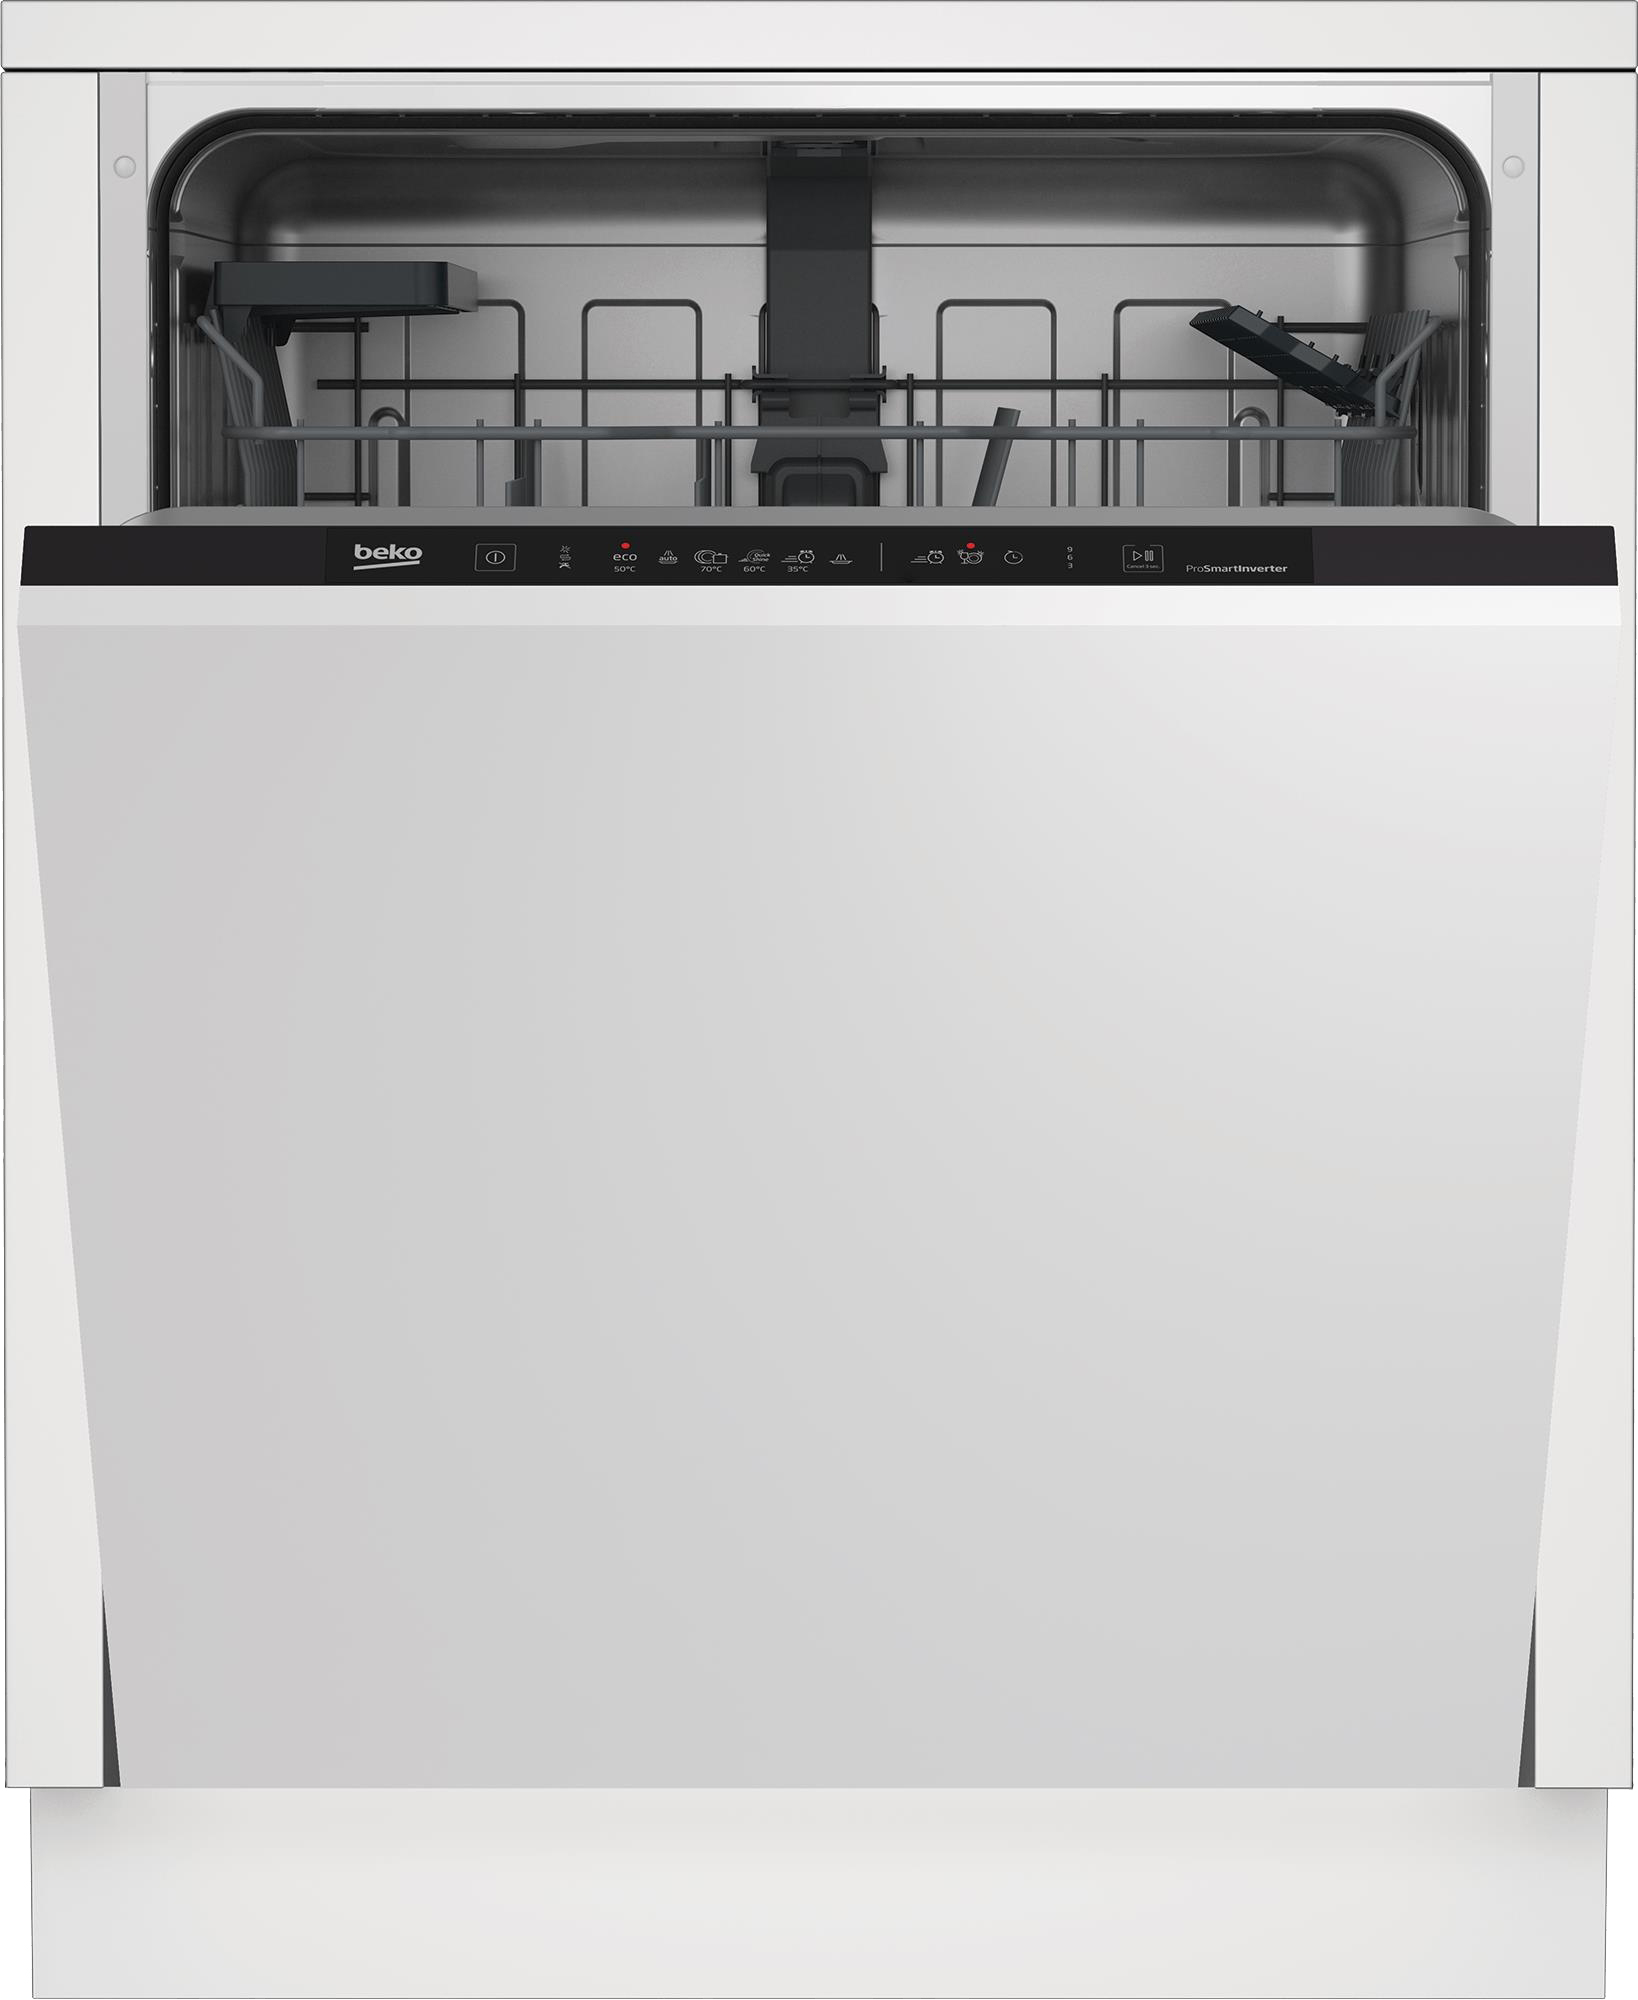 Посудомоечная машина Beko DIN36422 в интернет-магазине, главное фото